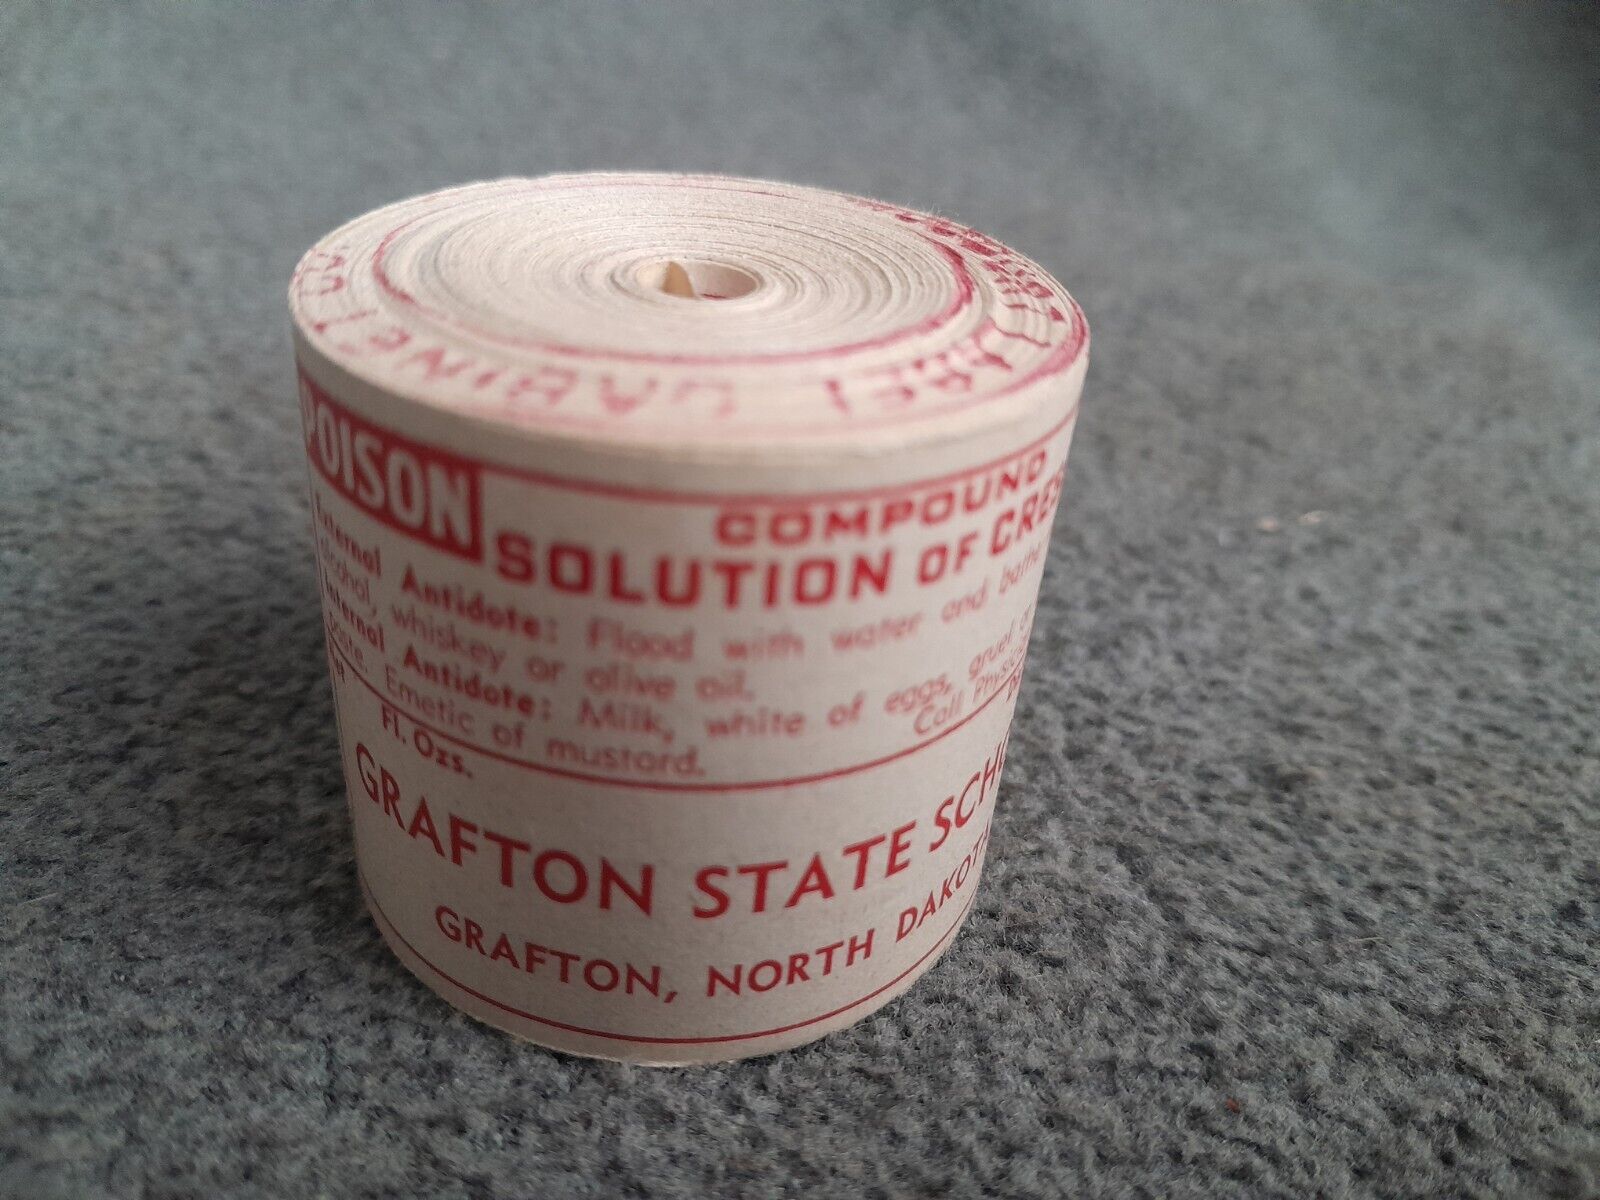 Rare Vintage 1960s NOS Solution Of Cresole Medicine Bottle Unused Labels On Roll